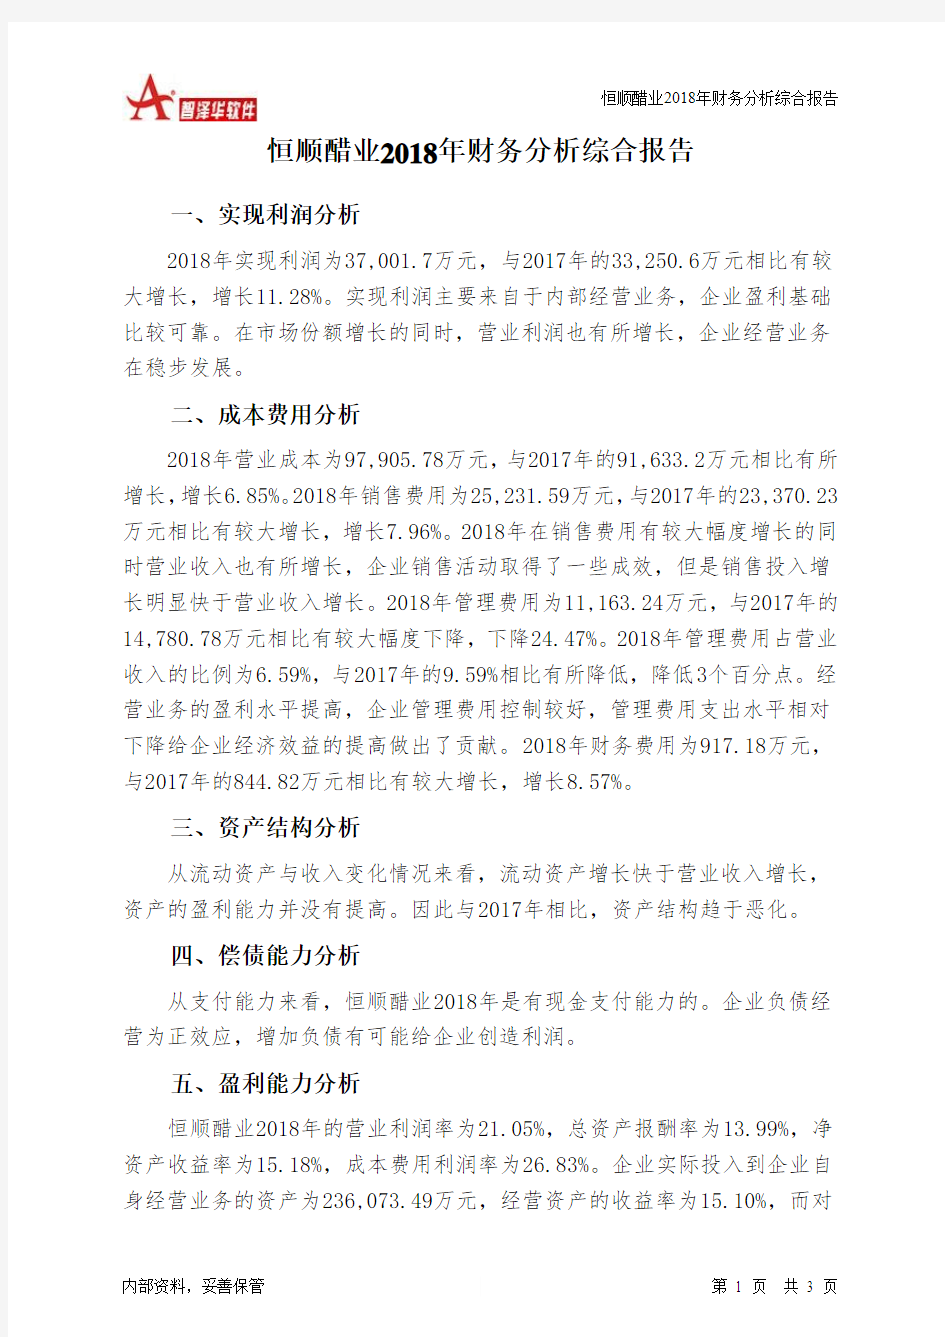 恒顺醋业2018年财务分析结论报告-智泽华